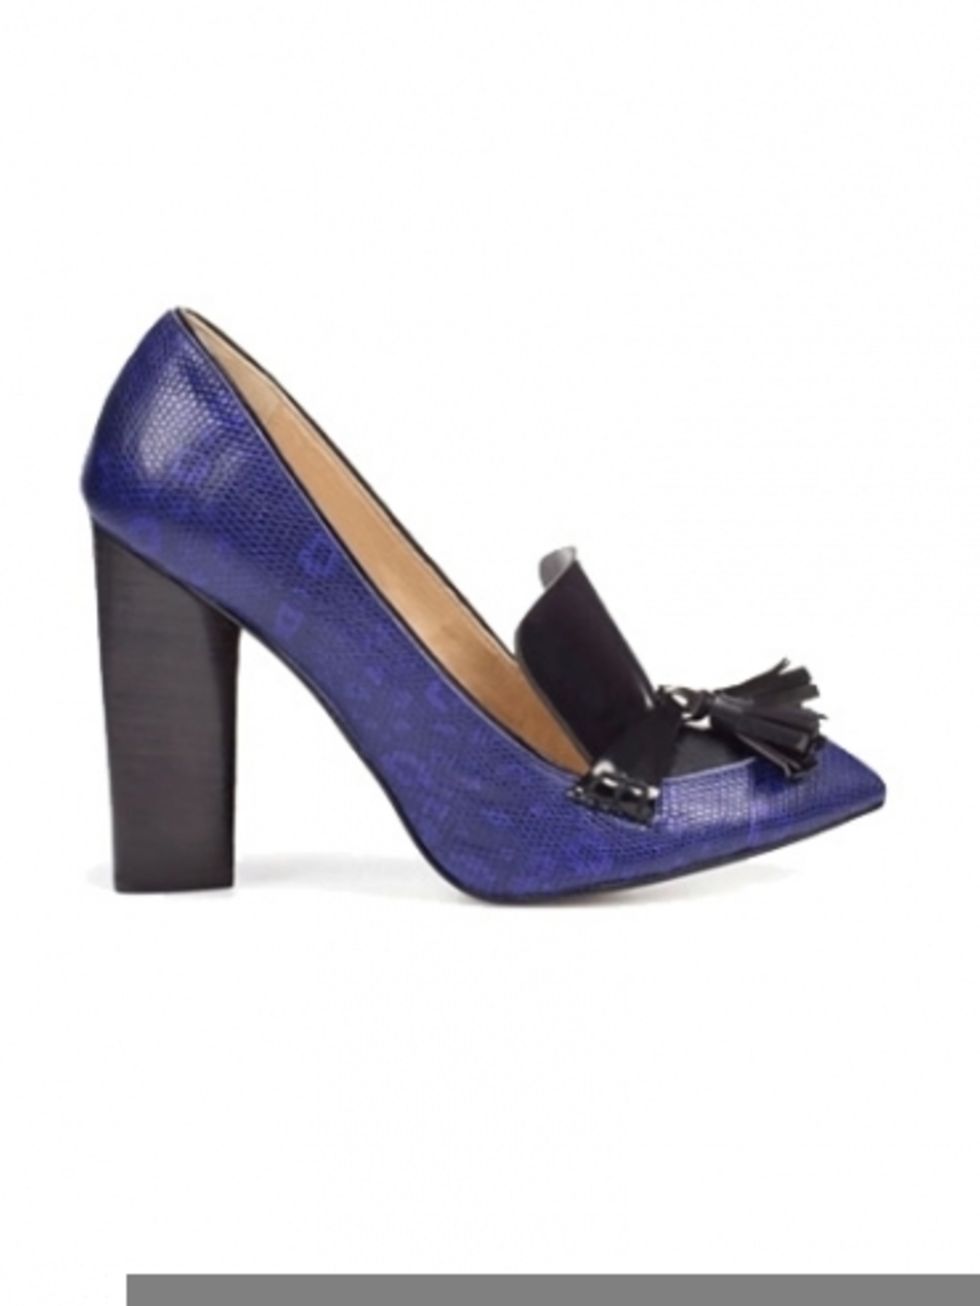 Footwear, High heels, Purple, Basic pump, Lavender, Violet, Electric blue, Sandal, Beige, Tan, 